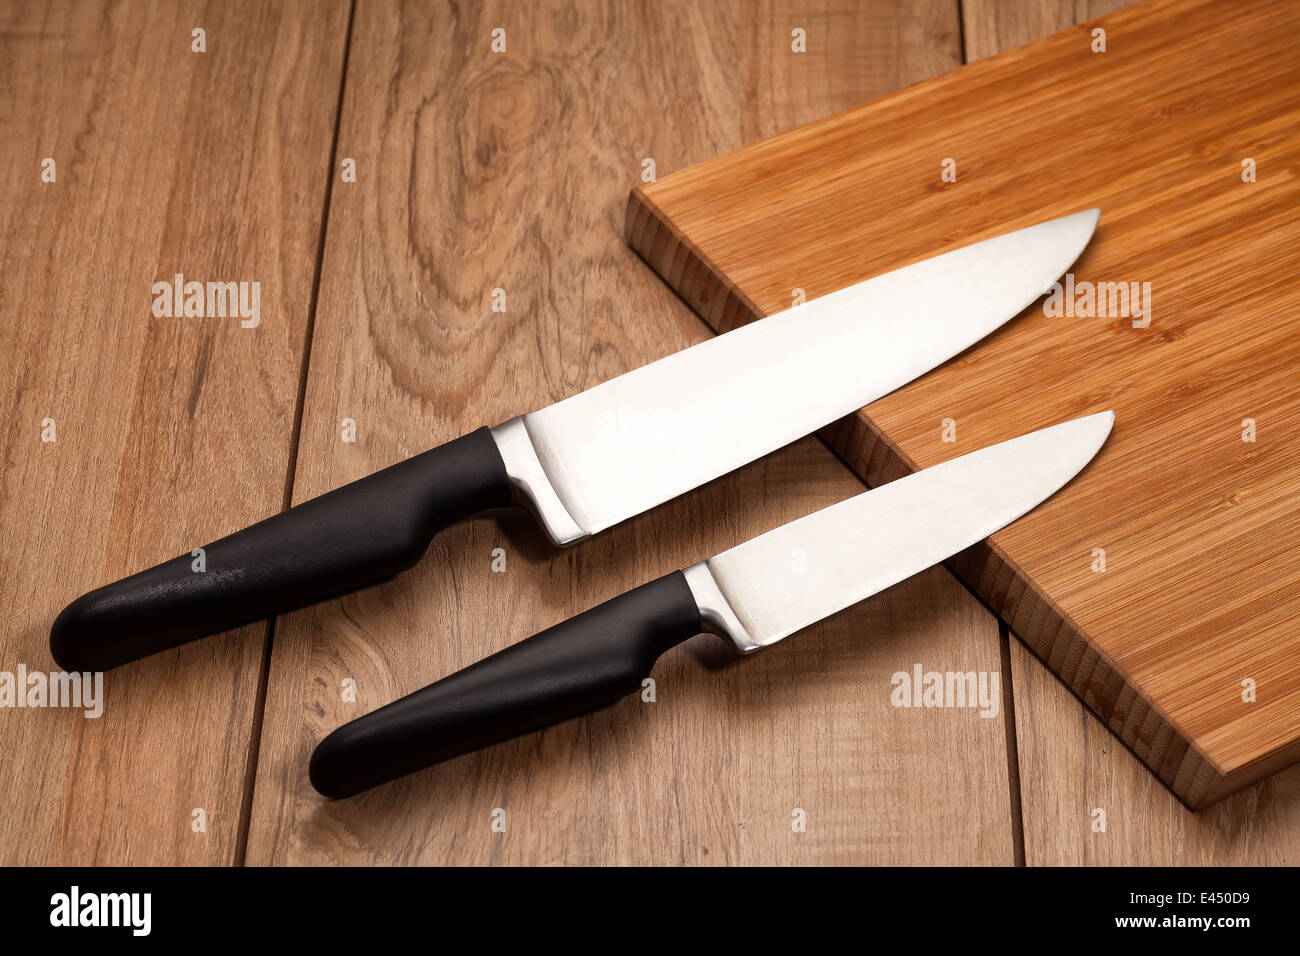 Des couteaux de cuisine sur fond de bois Banque D'Images